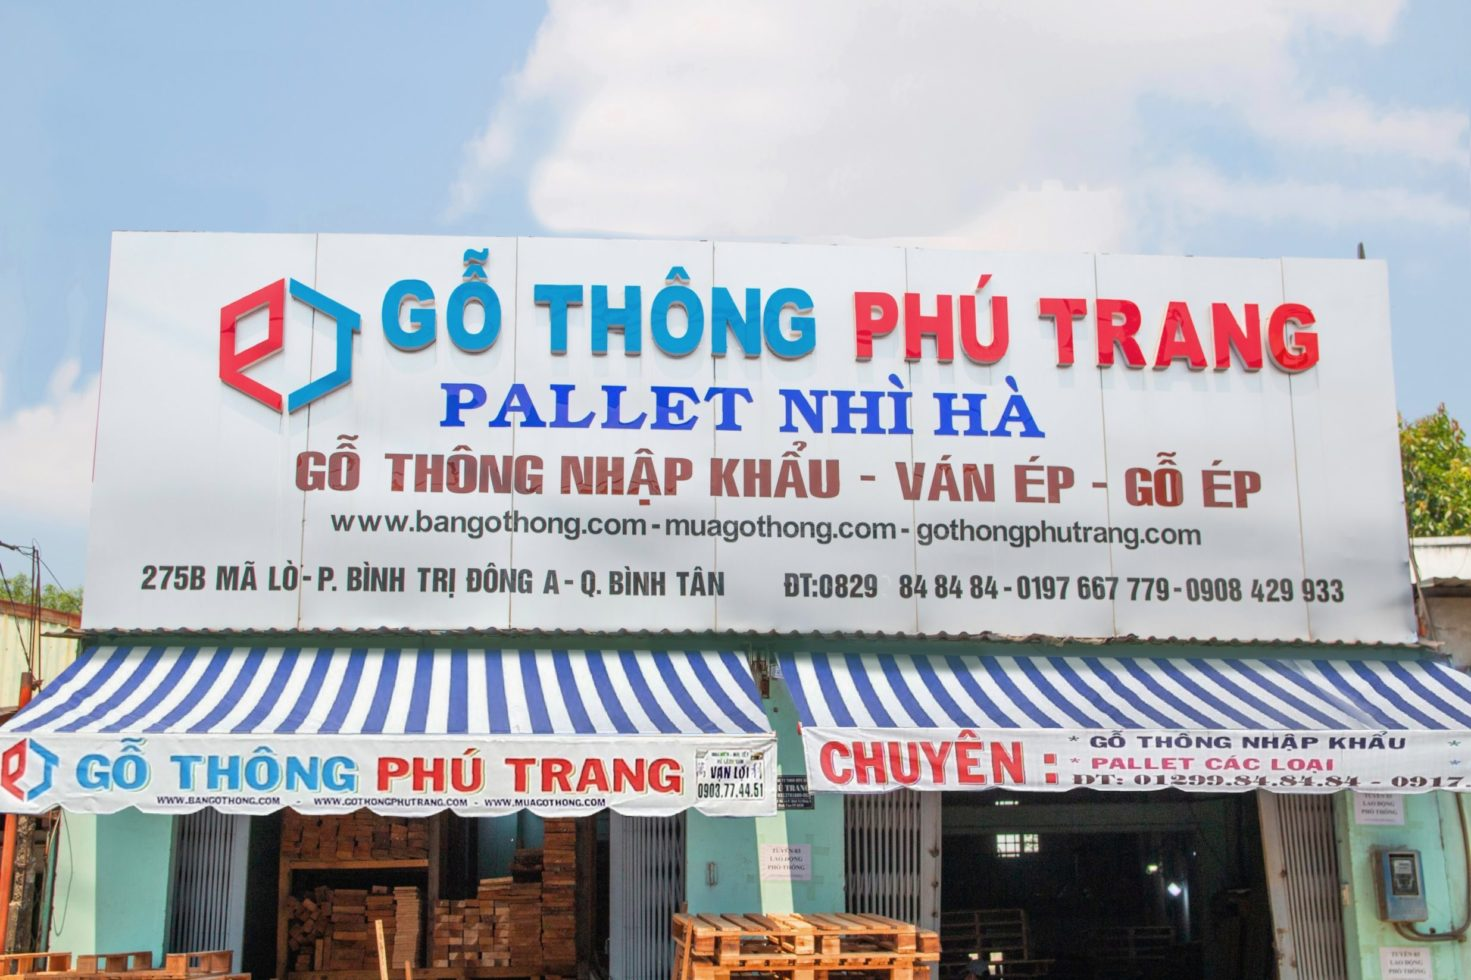 Phú Trang - Đơn vị bán gỗ thông ghép chất lượng hàng đầu TPHCM